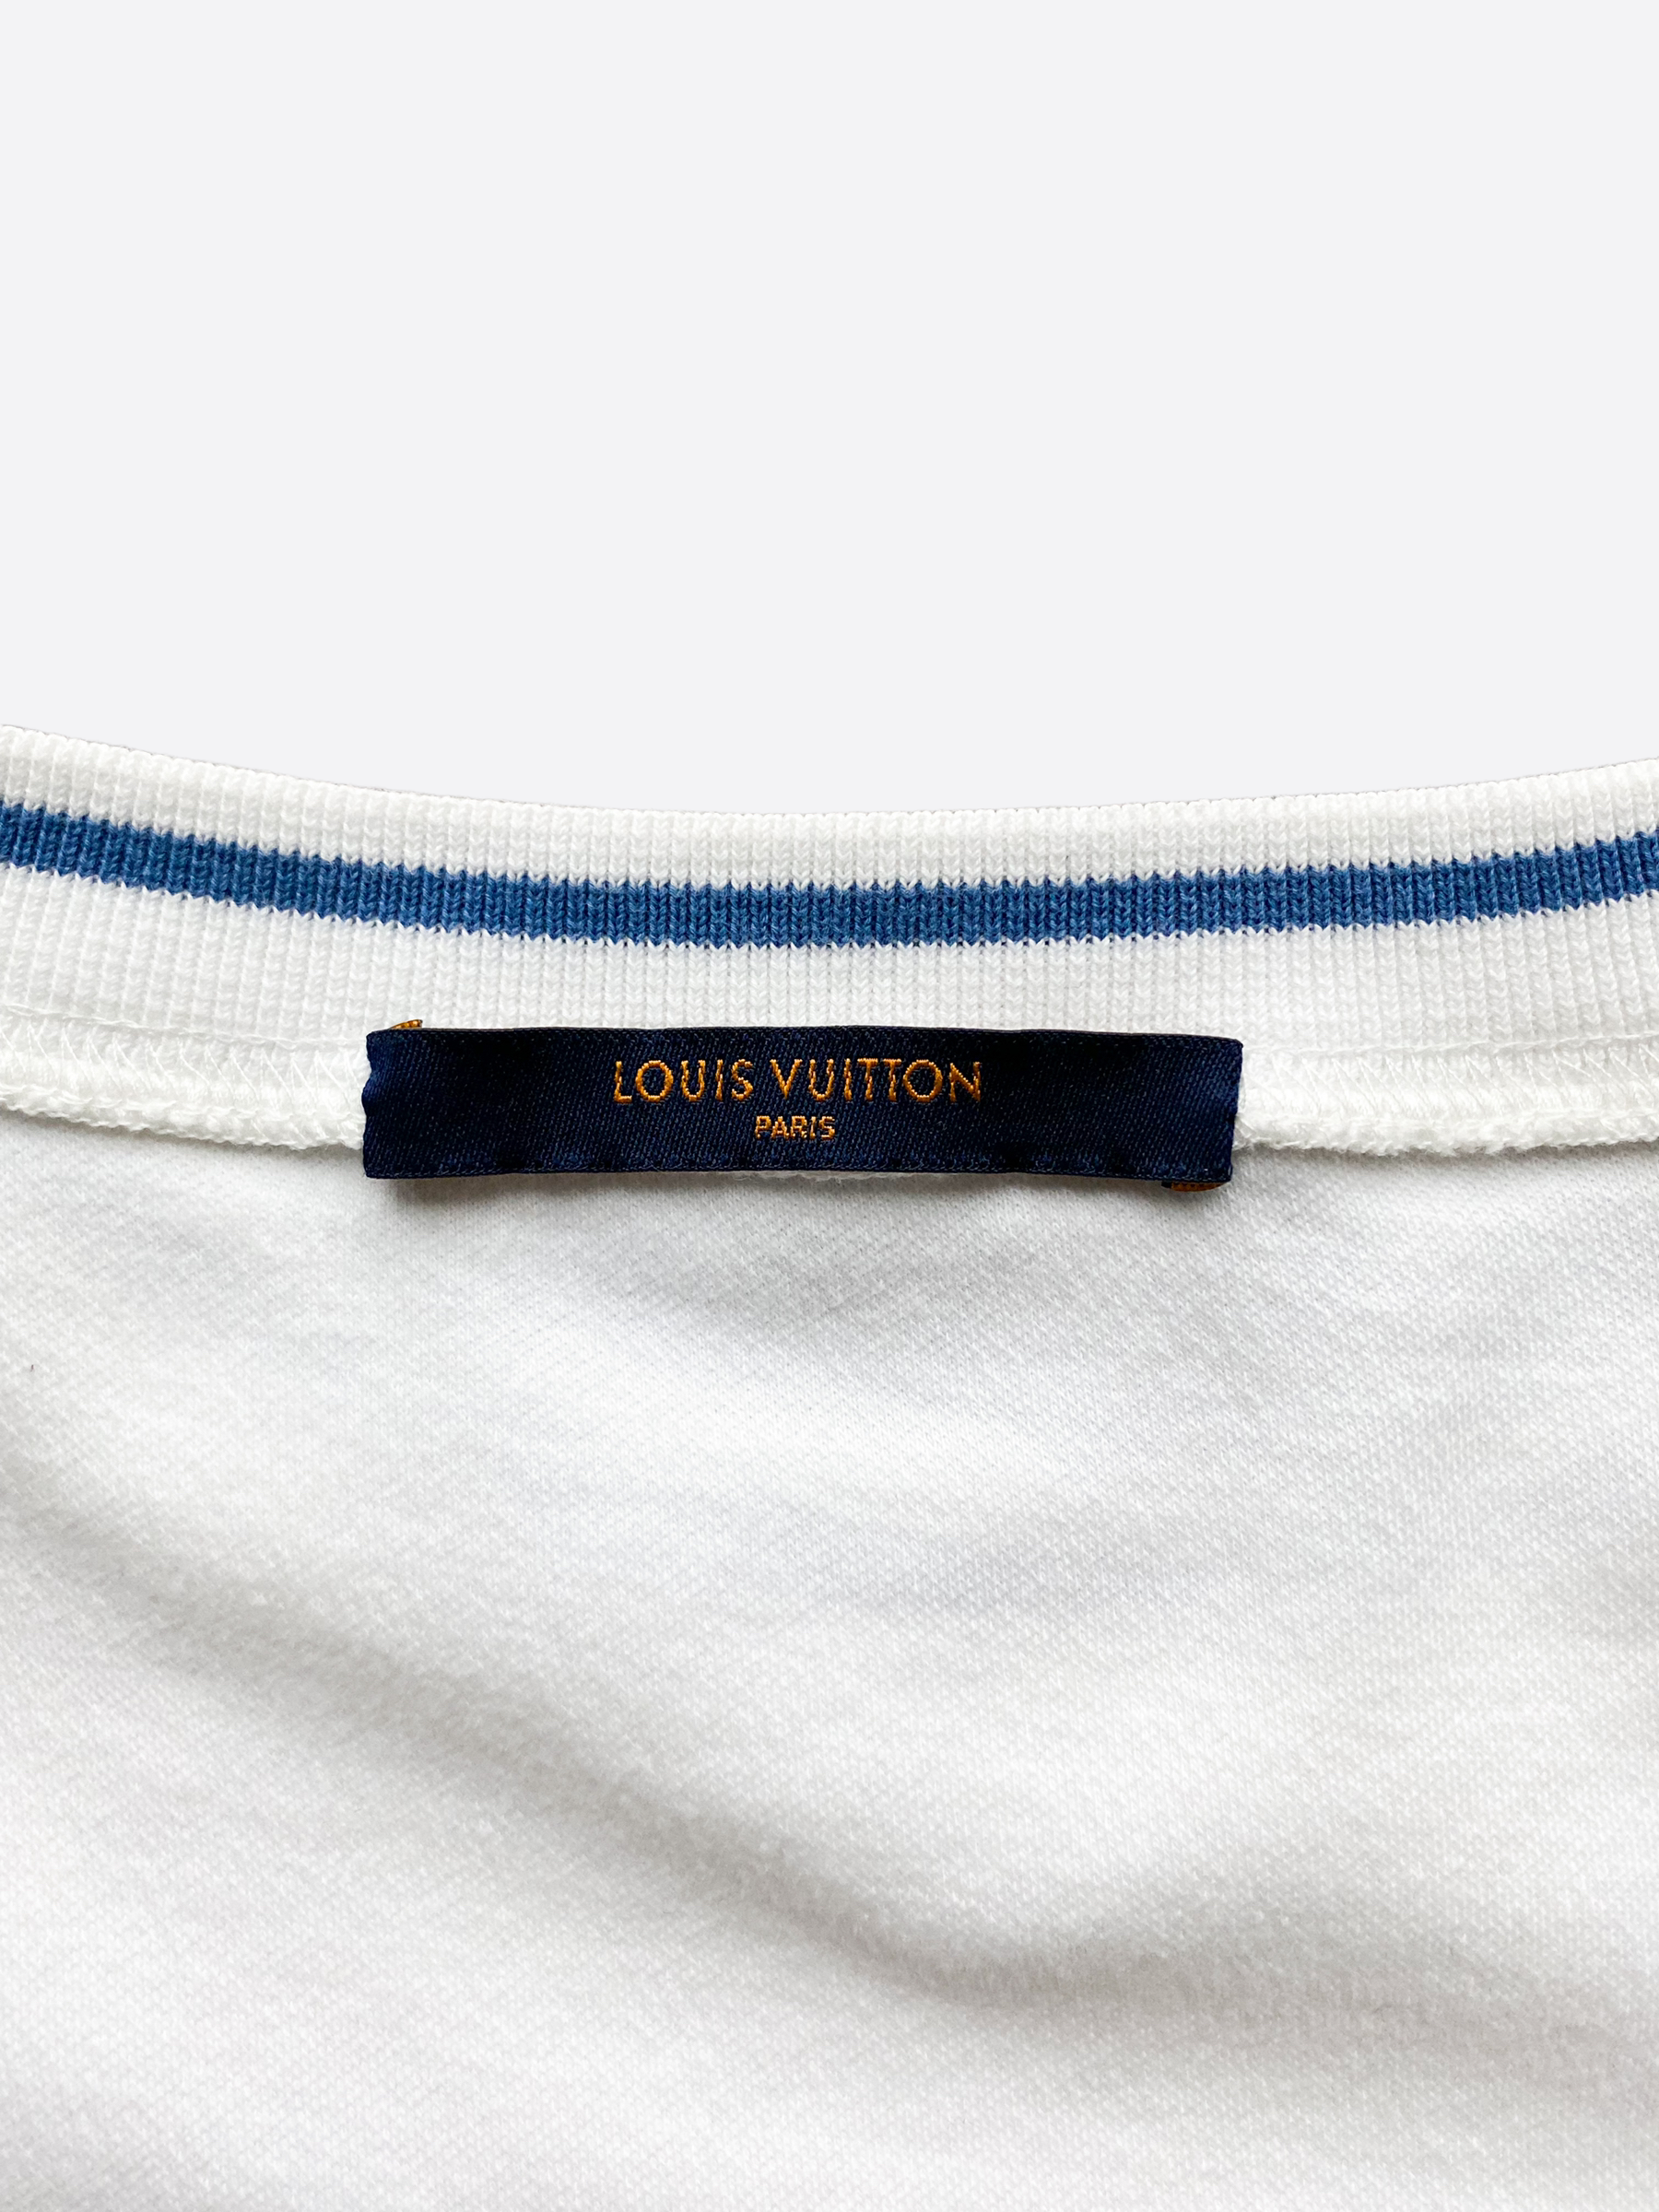 Louis Vuitton Louis Vuitton National Parks Patch T-Shirt